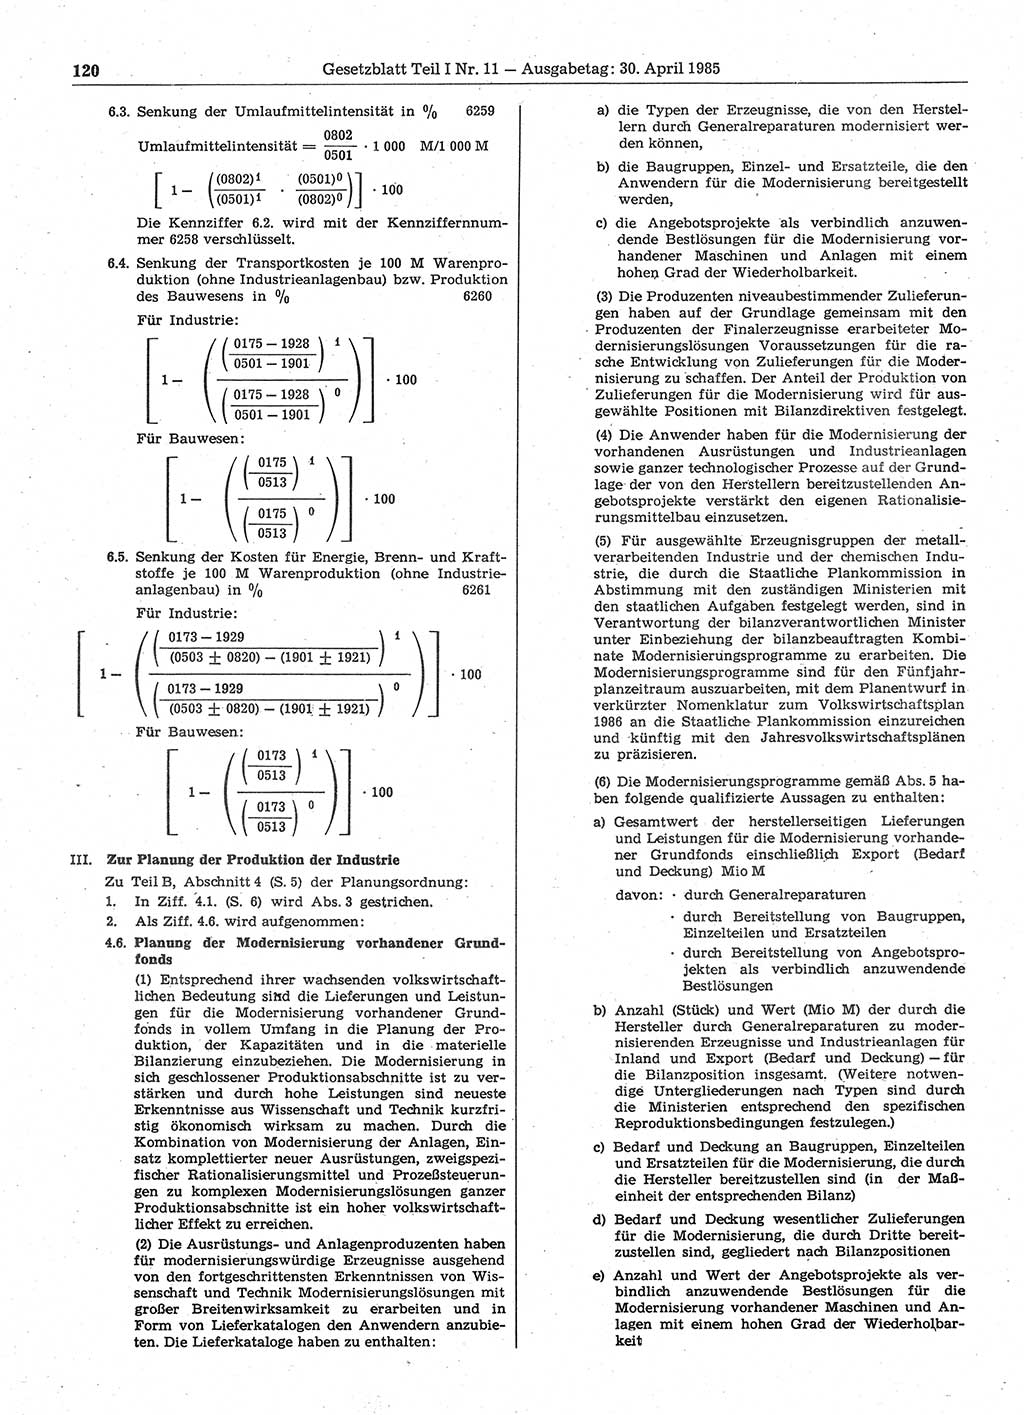 Gesetzblatt (GBl.) der Deutschen Demokratischen Republik (DDR) Teil Ⅰ 1985, Seite 120 (GBl. DDR Ⅰ 1985, S. 120)